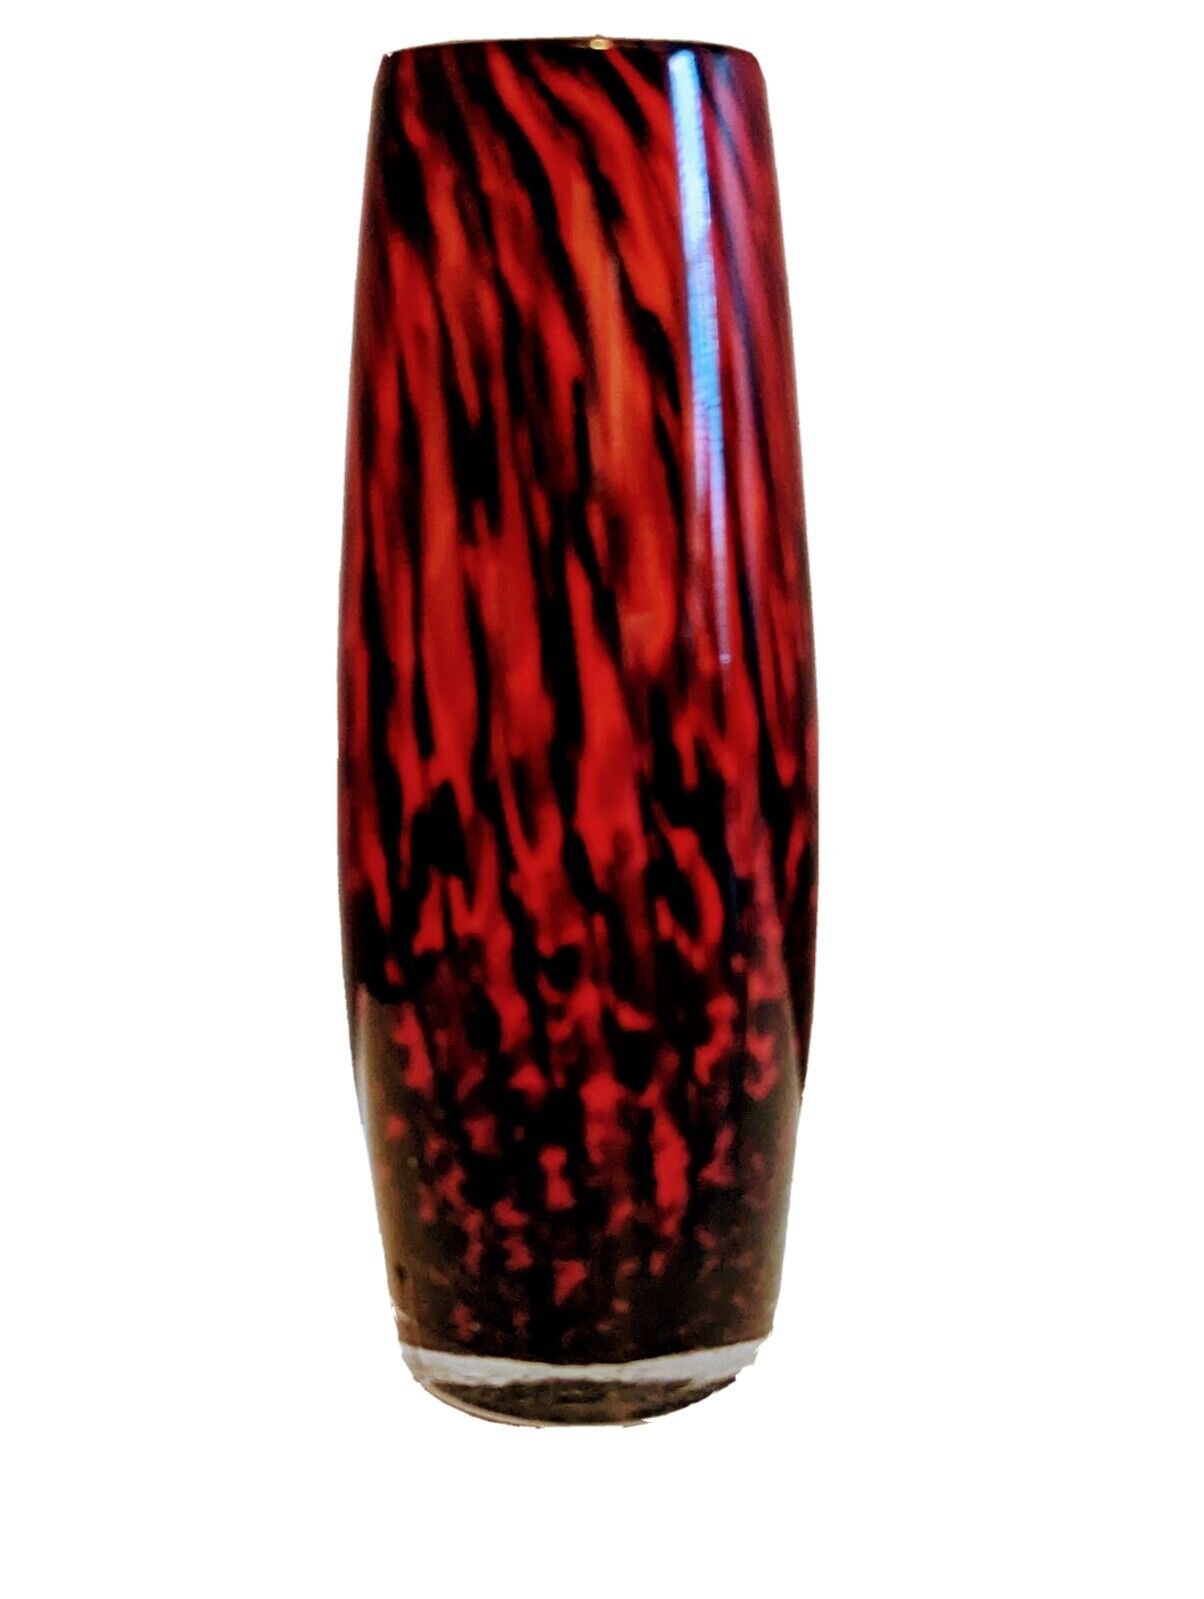 Studio Art Glass Vase 6